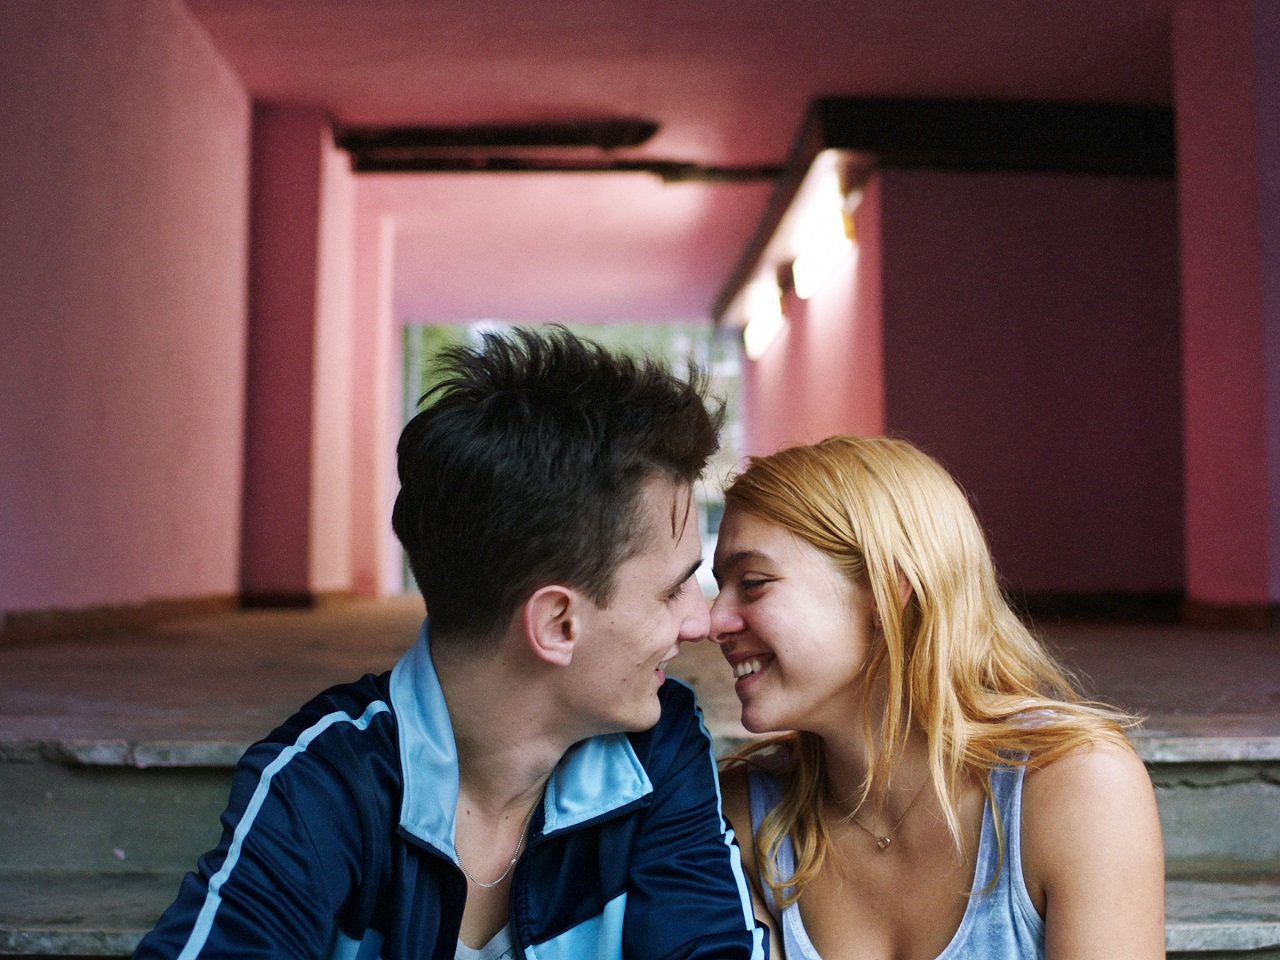 Zwei junge Menschen, eine Hundertstelsekunde vor einem Kuss. Filmszene aus "Take me somewhere nice".